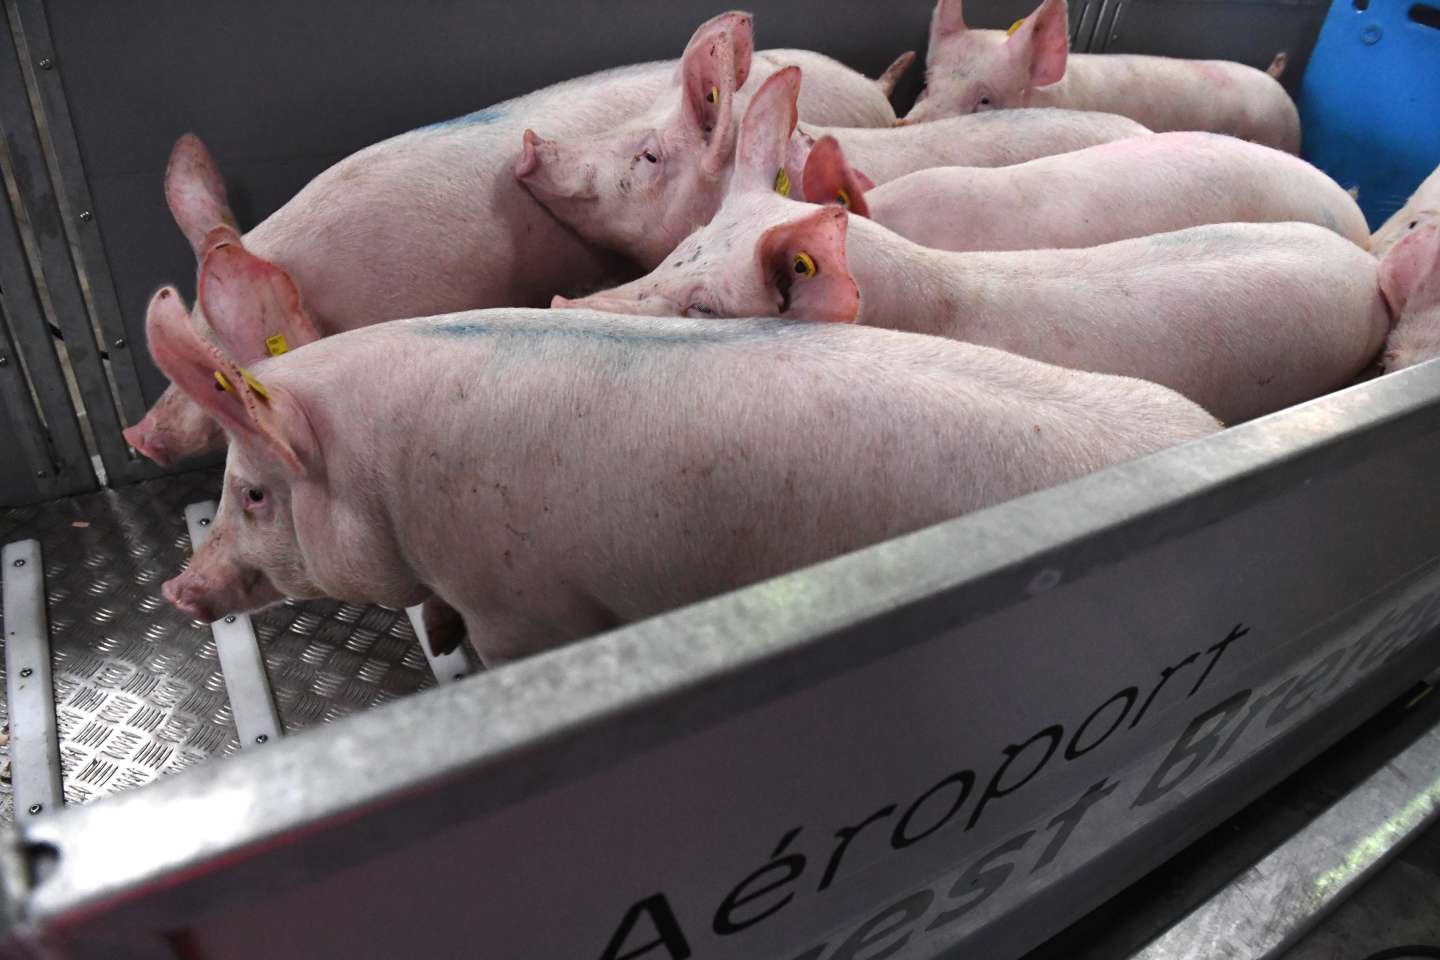 Peste porcine africaine : un foyer détecté dans l’ouest de l’Allemagne, près de la frontière française